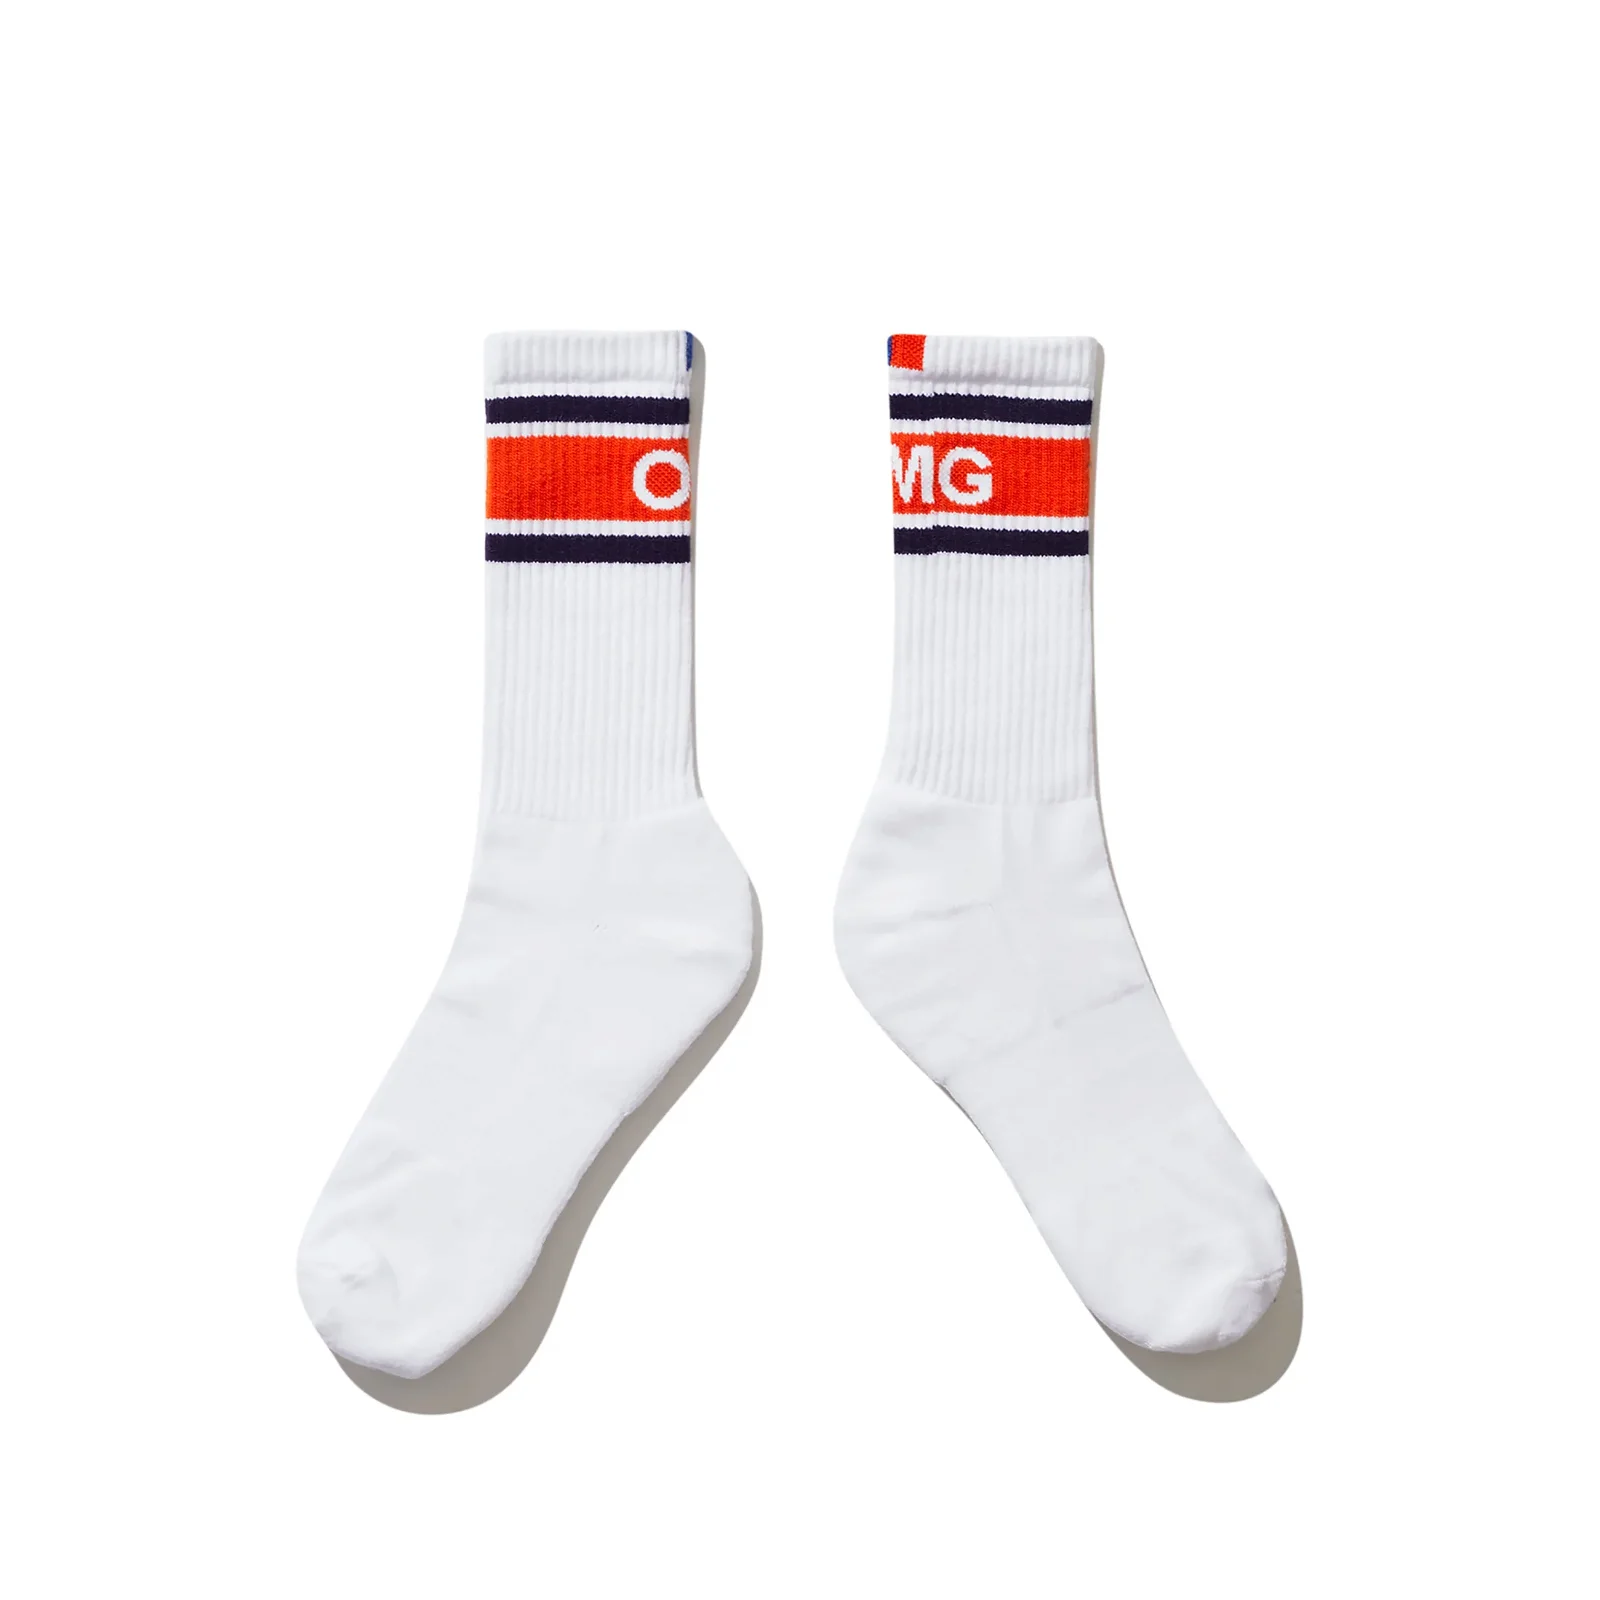 Image of The Women's OMG Sock - White